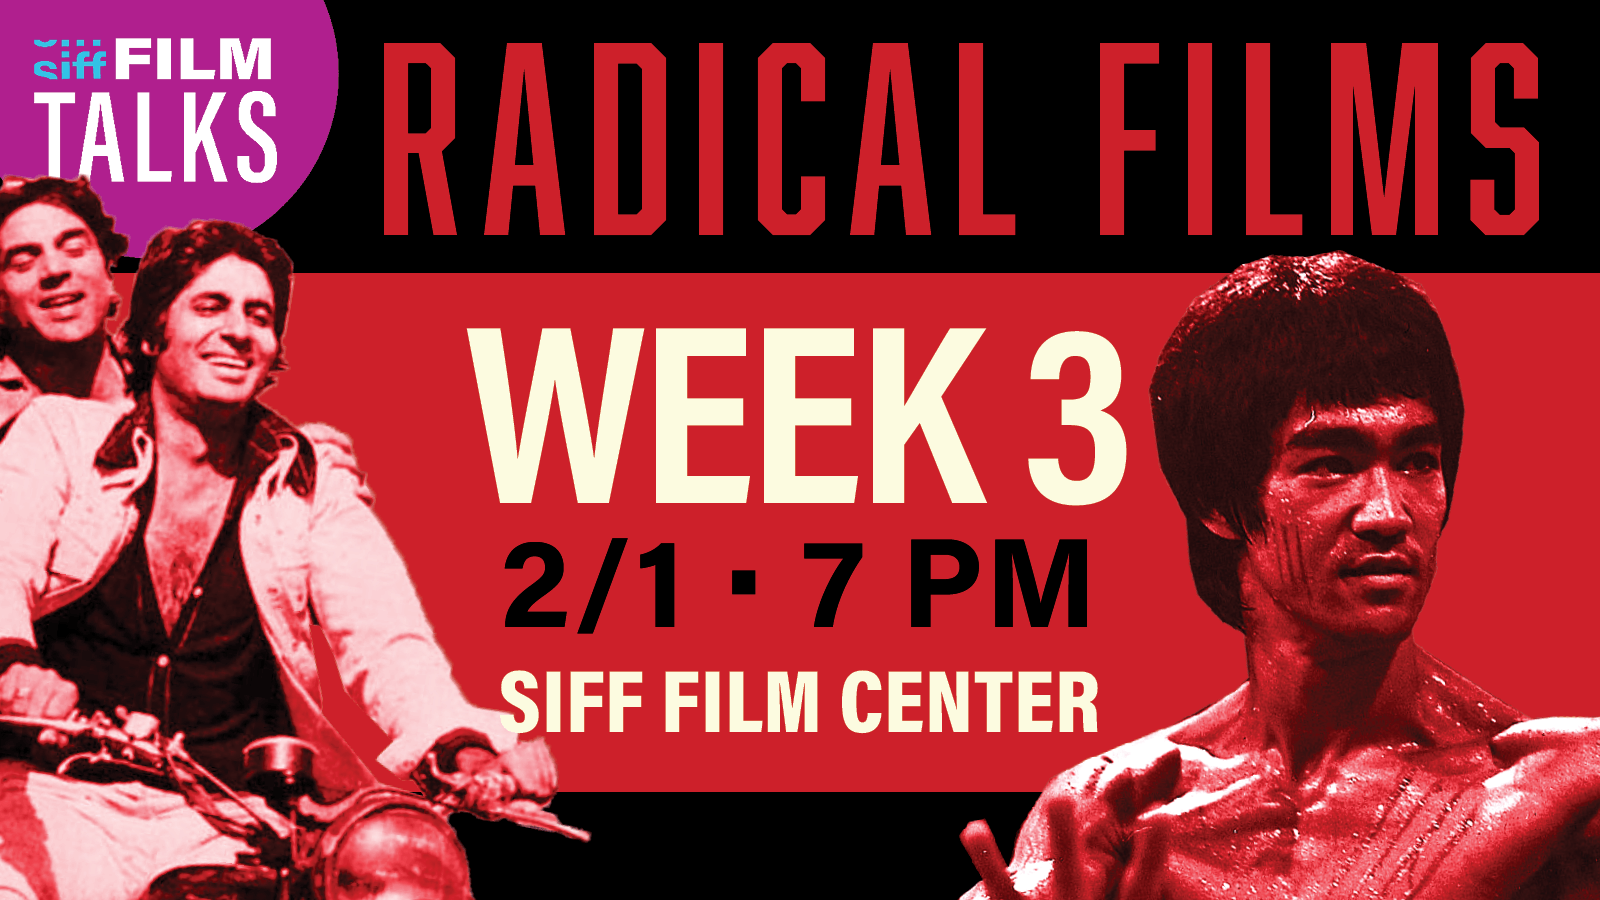 Radical Films Week 3